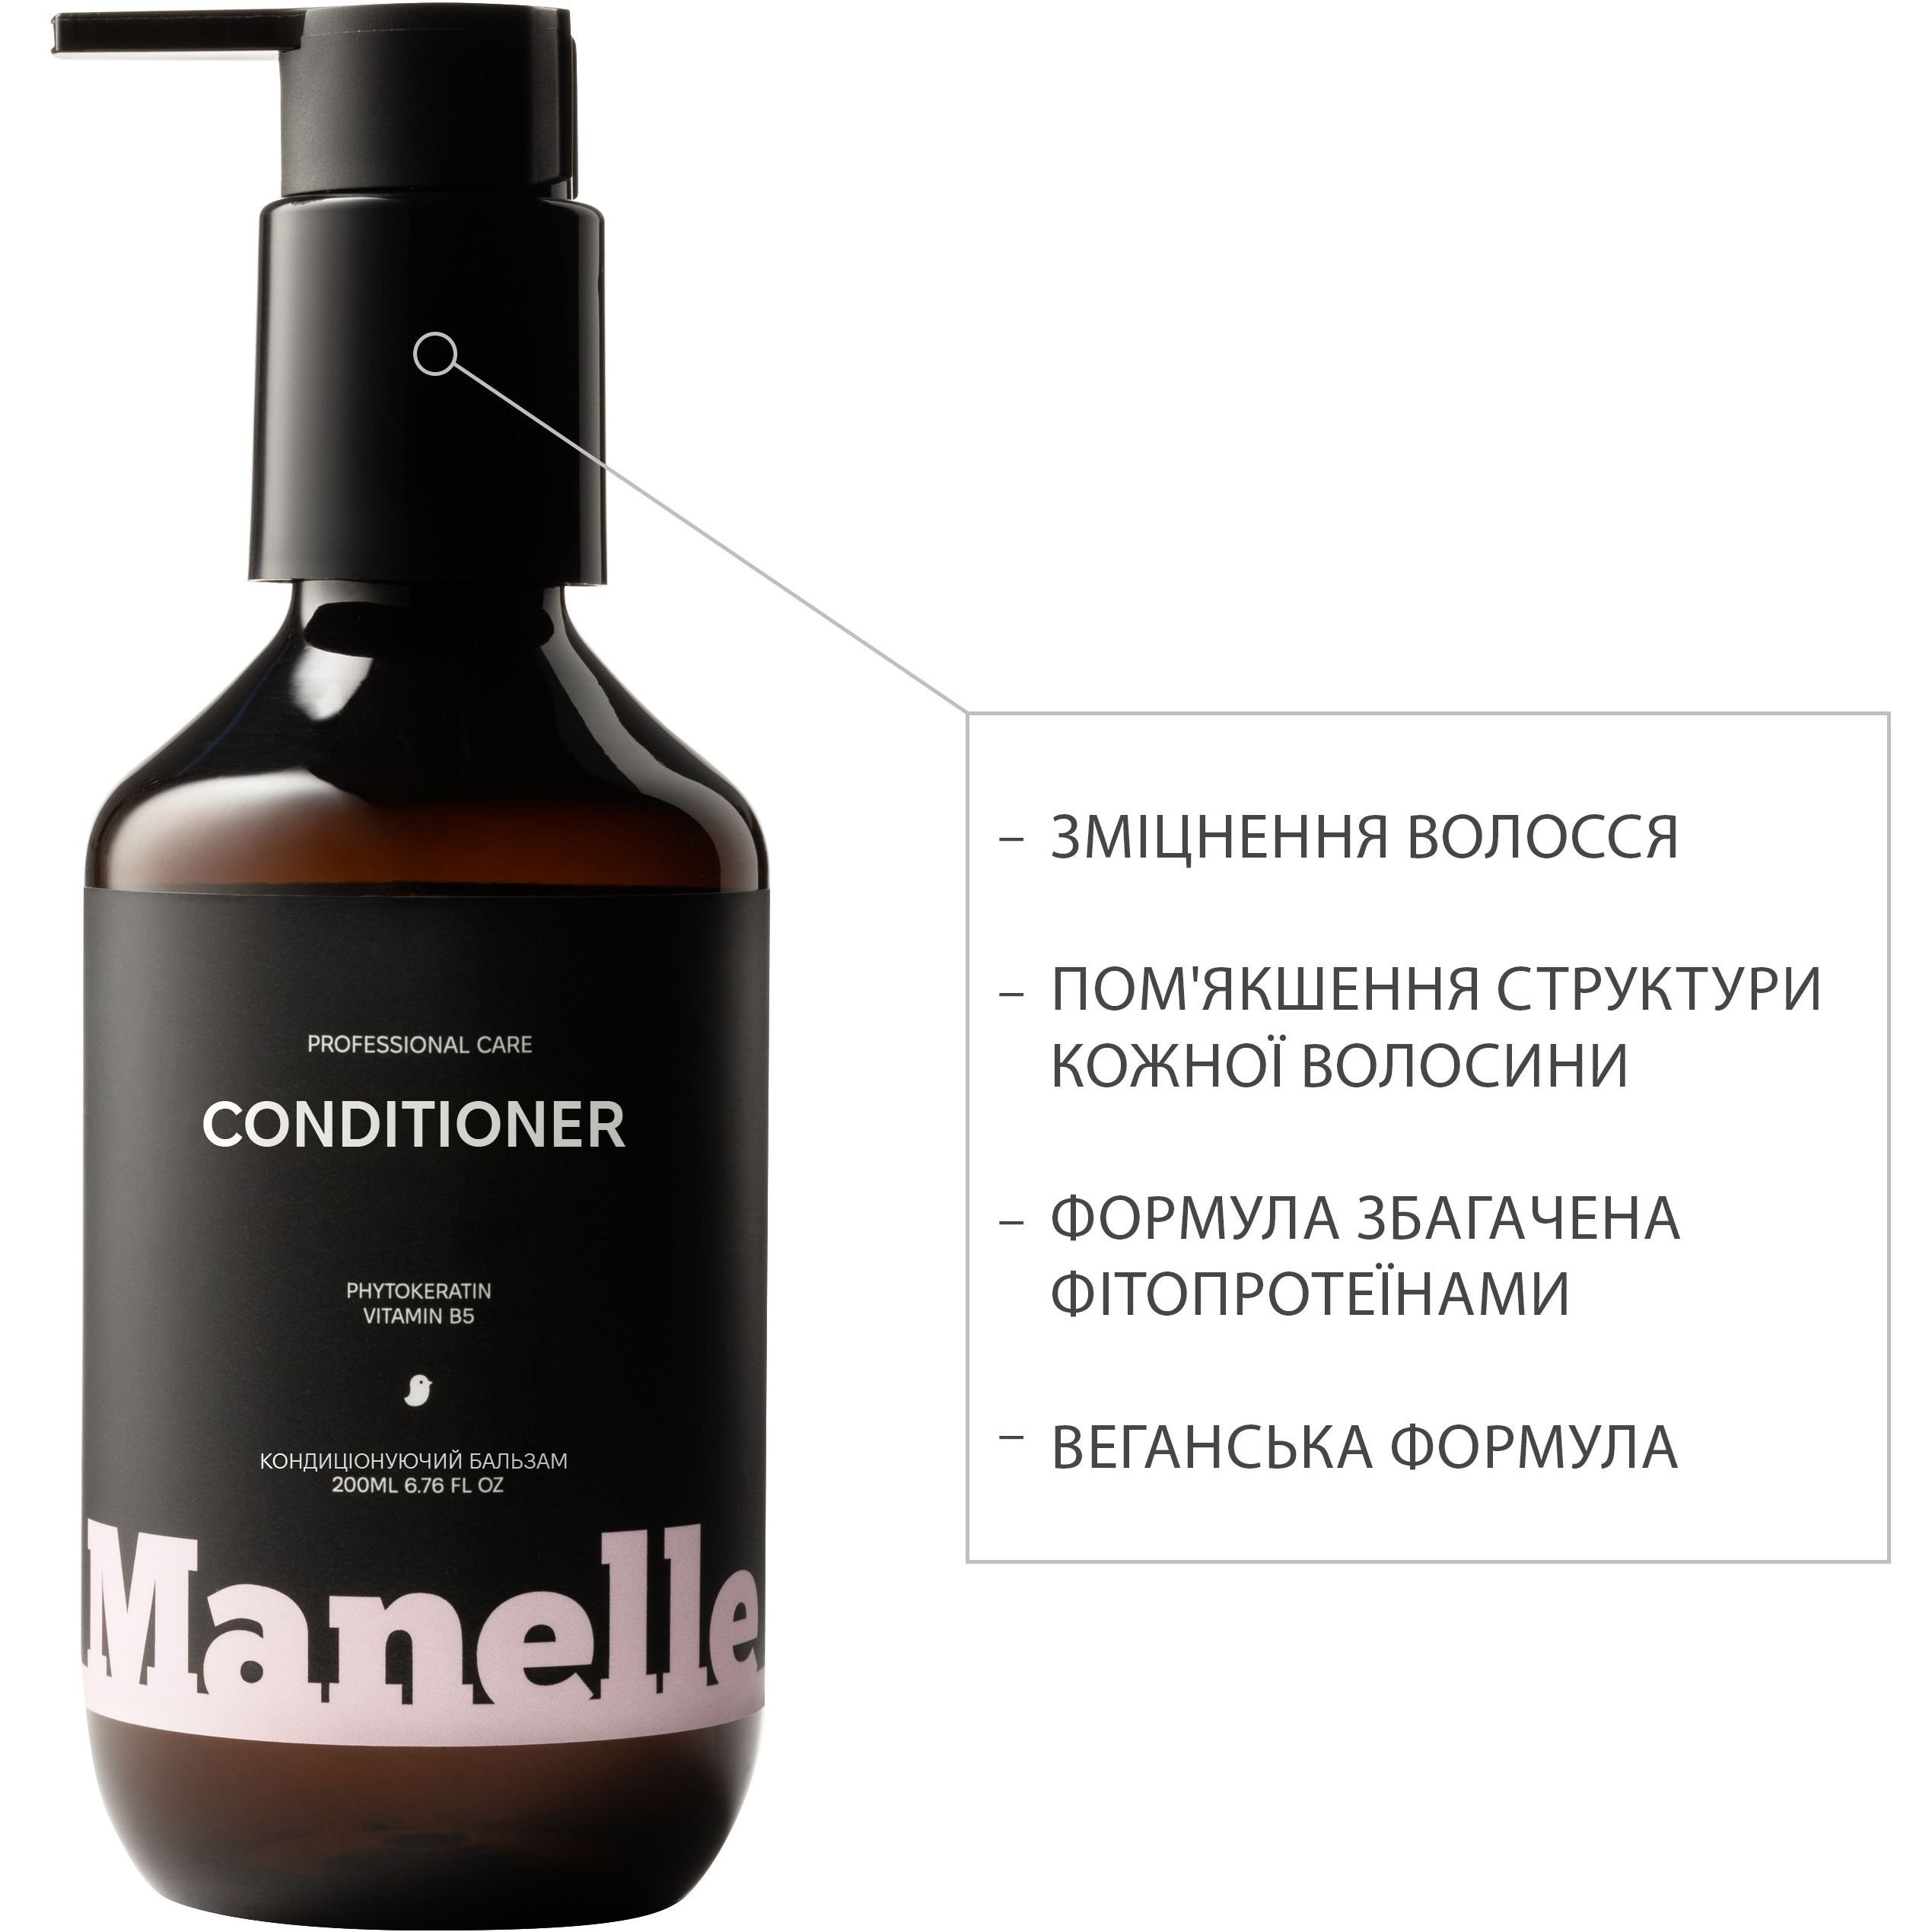 Безсульфатний кондиціонер для волосся Manelle Рrofessional care Phytokeratin vitamin B5 200 мл - фото 2